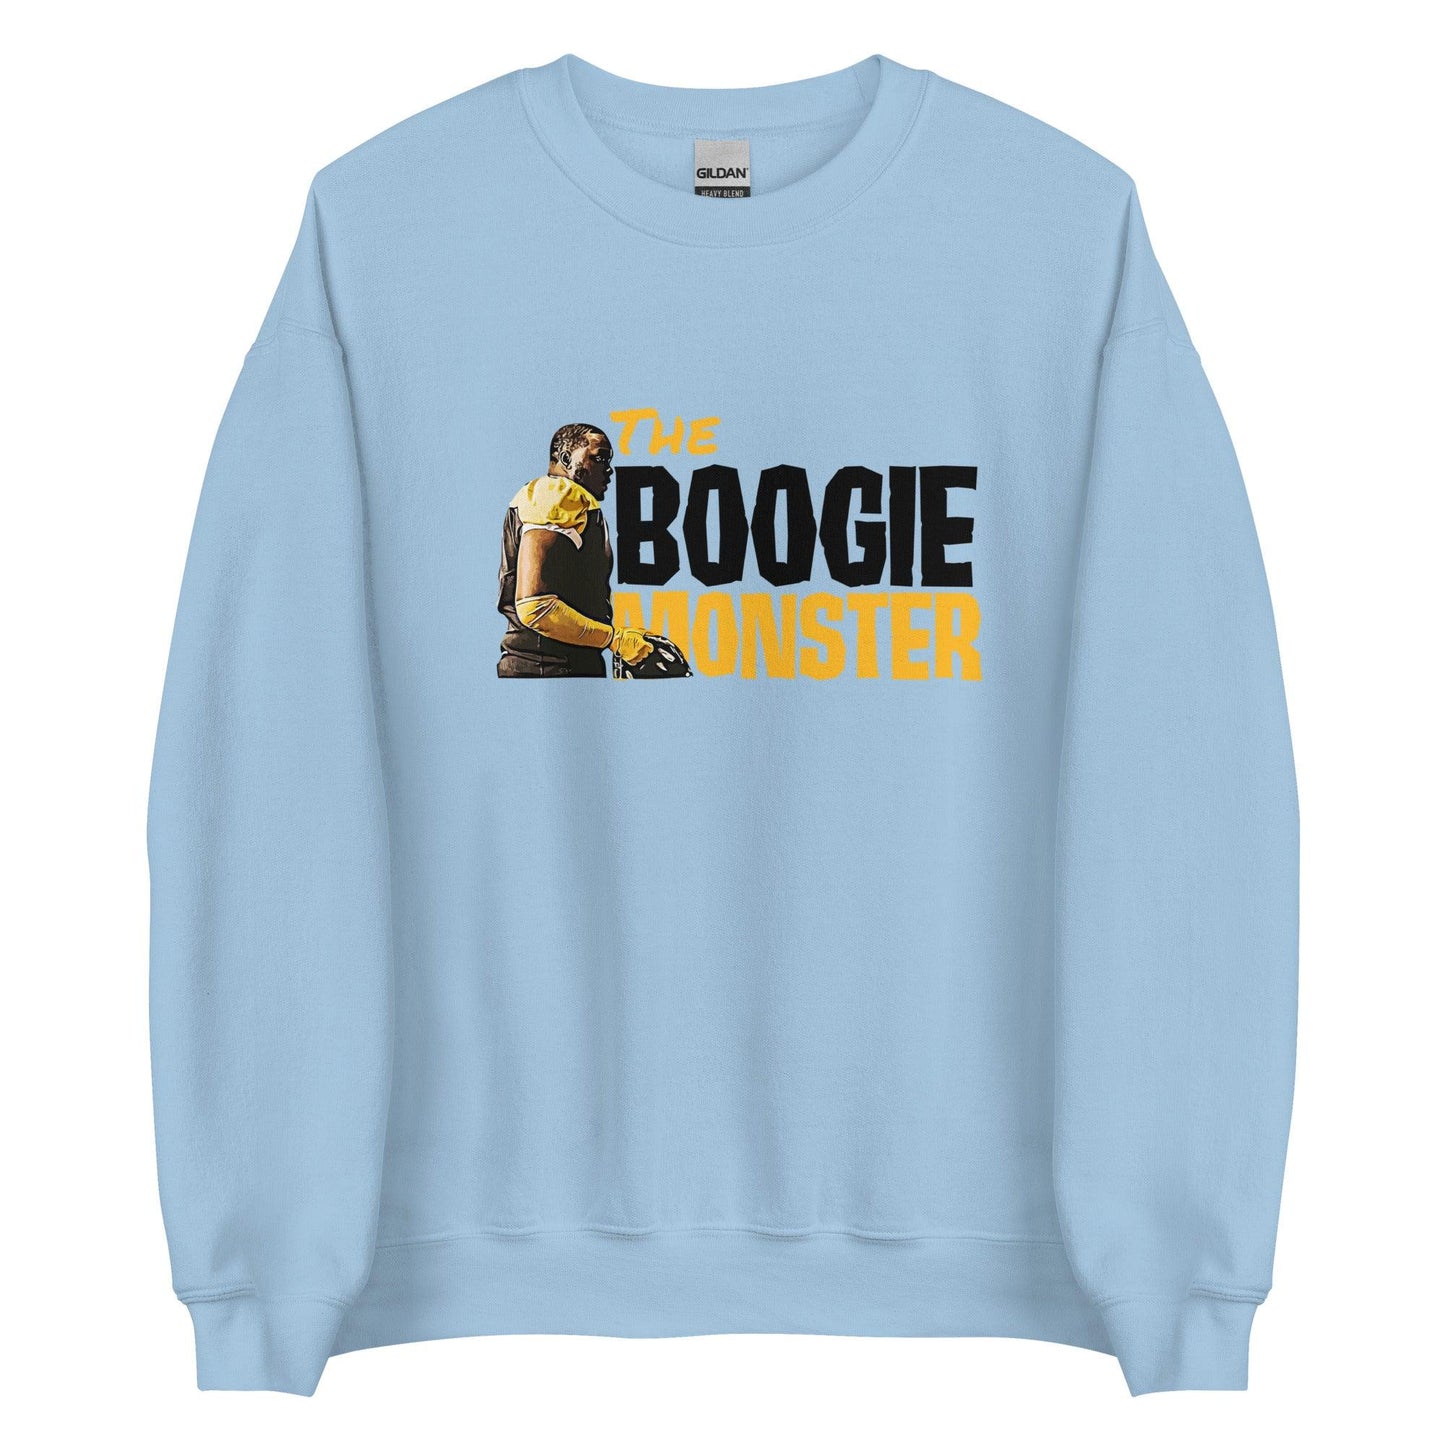 Boogie Roberts "Monster" Sweatshirt - Fan Arch